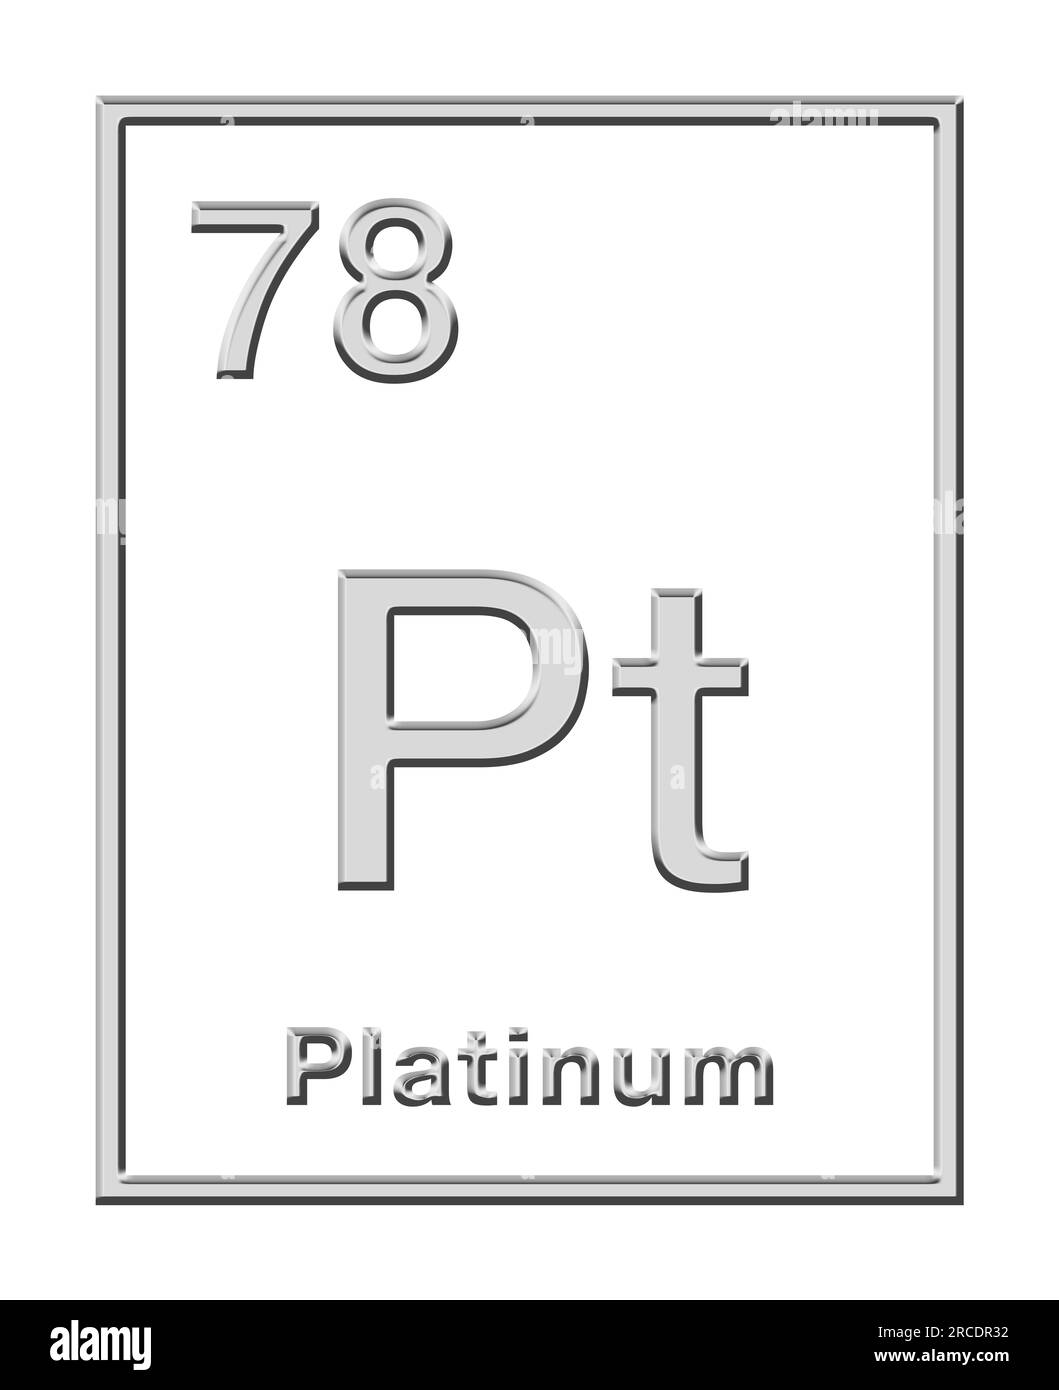 Platine, élément chimique du tableau périodique, avec forme en relief. Métal noble et précieux avec le symbole chimique Pt (plata espagnole) et le numéro atomique 78. Banque D'Images